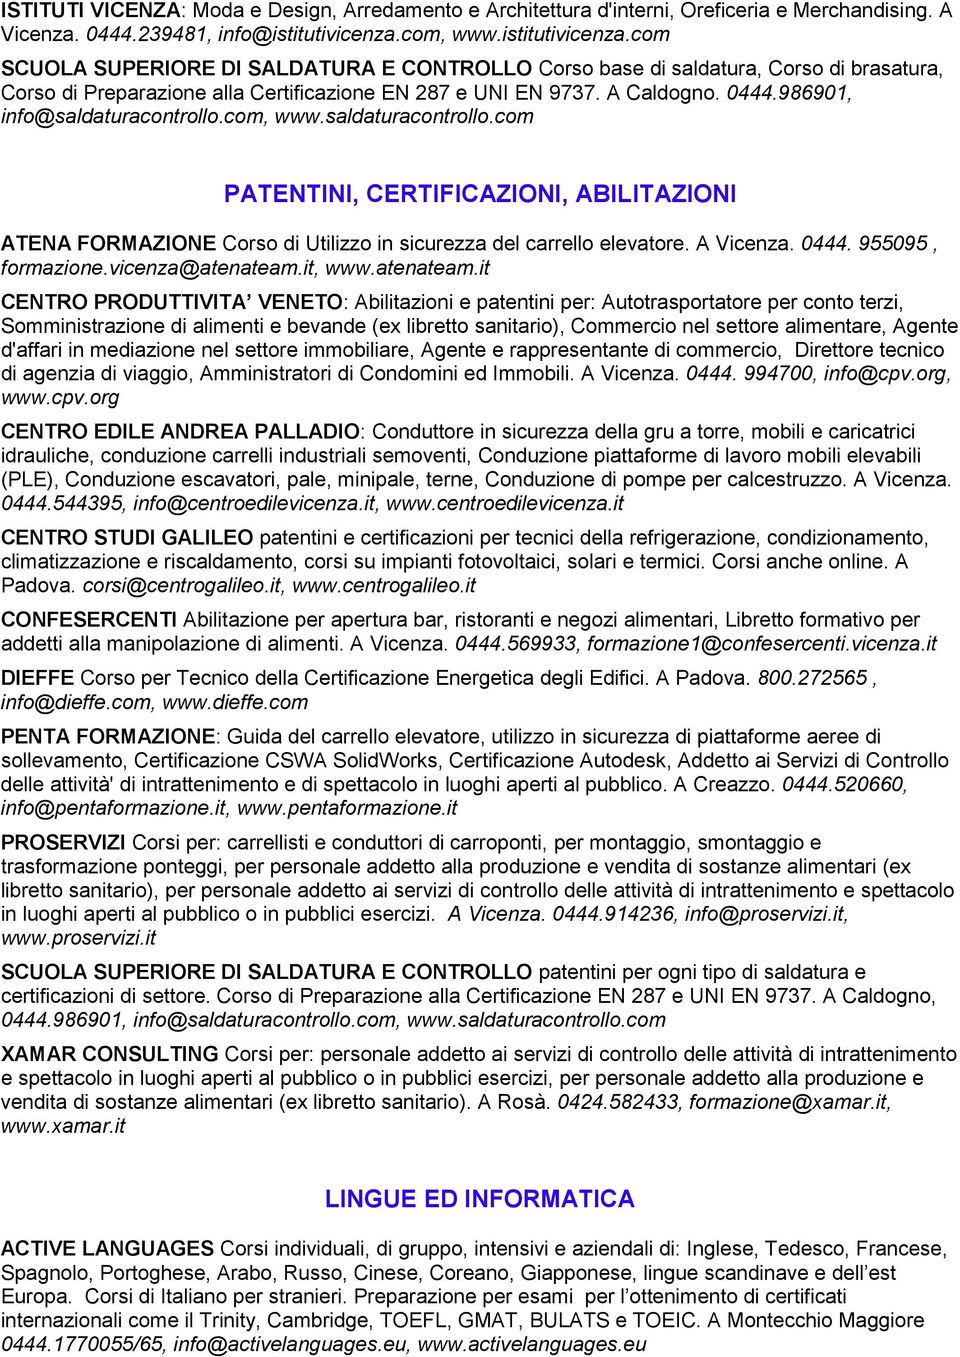 986901, info@saldaturacontrollo.com, www.saldaturacontrollo.com PATENTINI, CERTIFICAZIONI, ABILITAZIONI ATENA FORMAZIONE Corso di Utilizzo in sicurezza del carrello elevatore. A Vicenza. 0444.